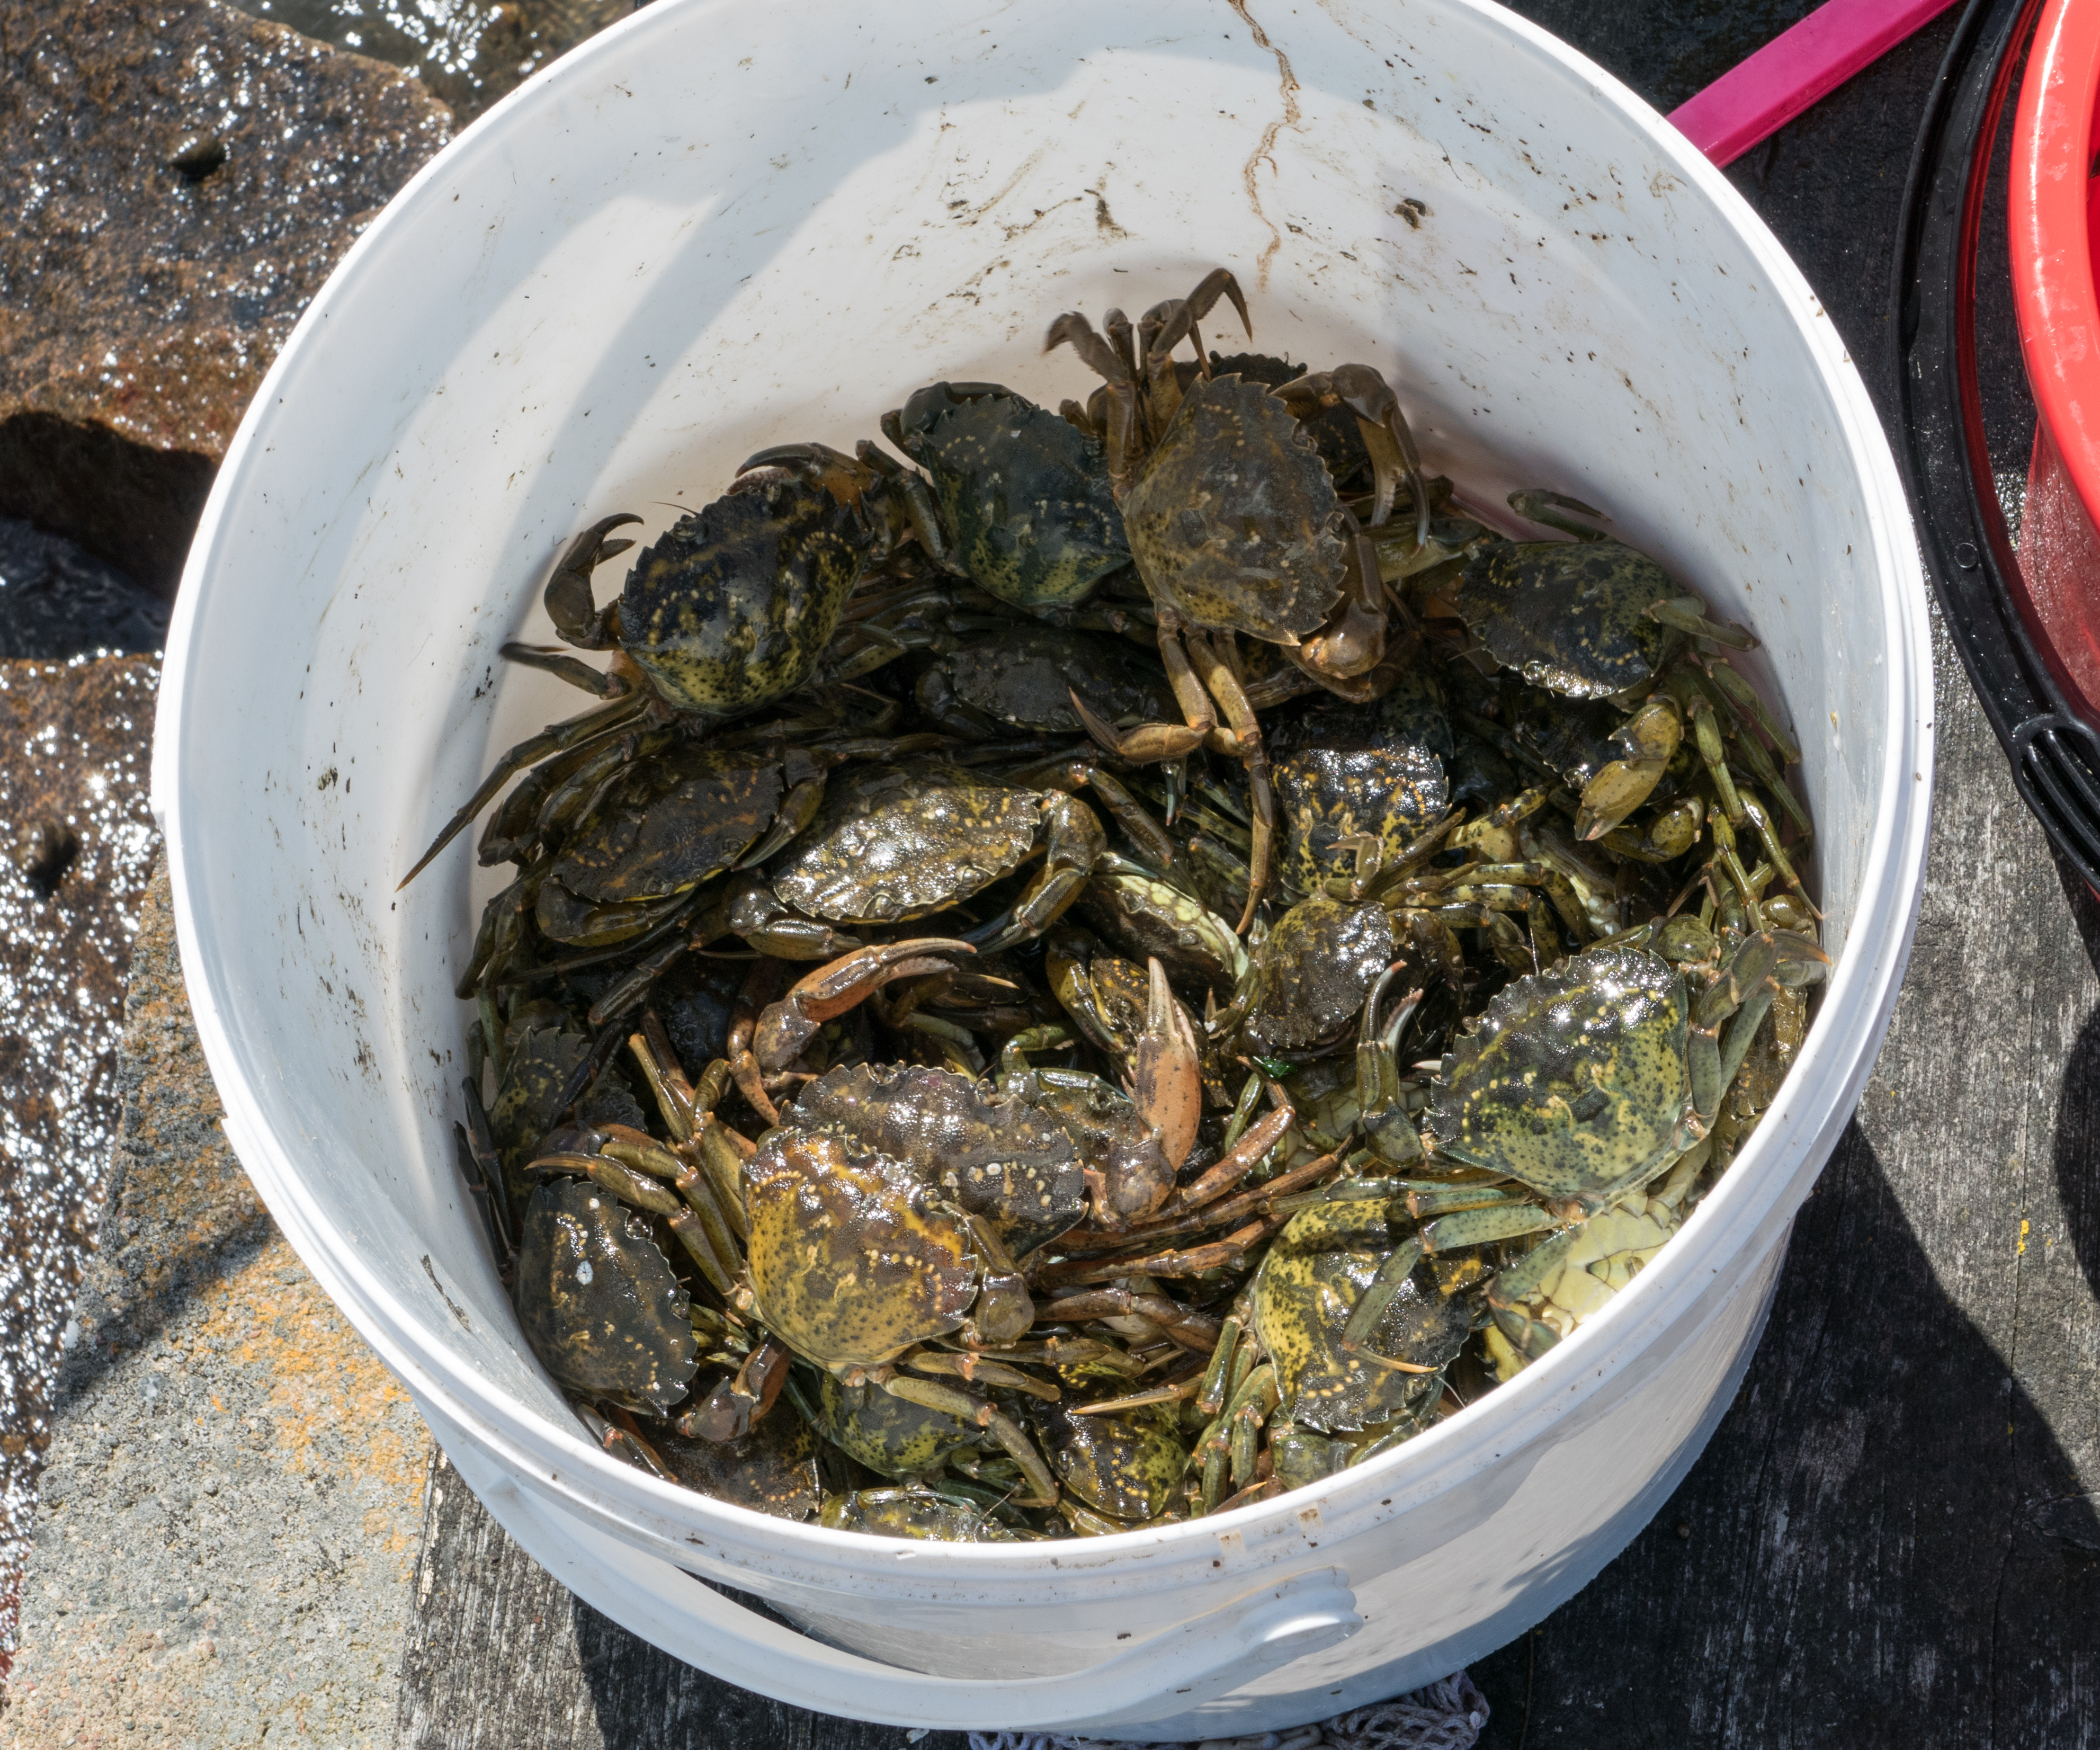 Shore_crabs_in_a_bucket.jpg